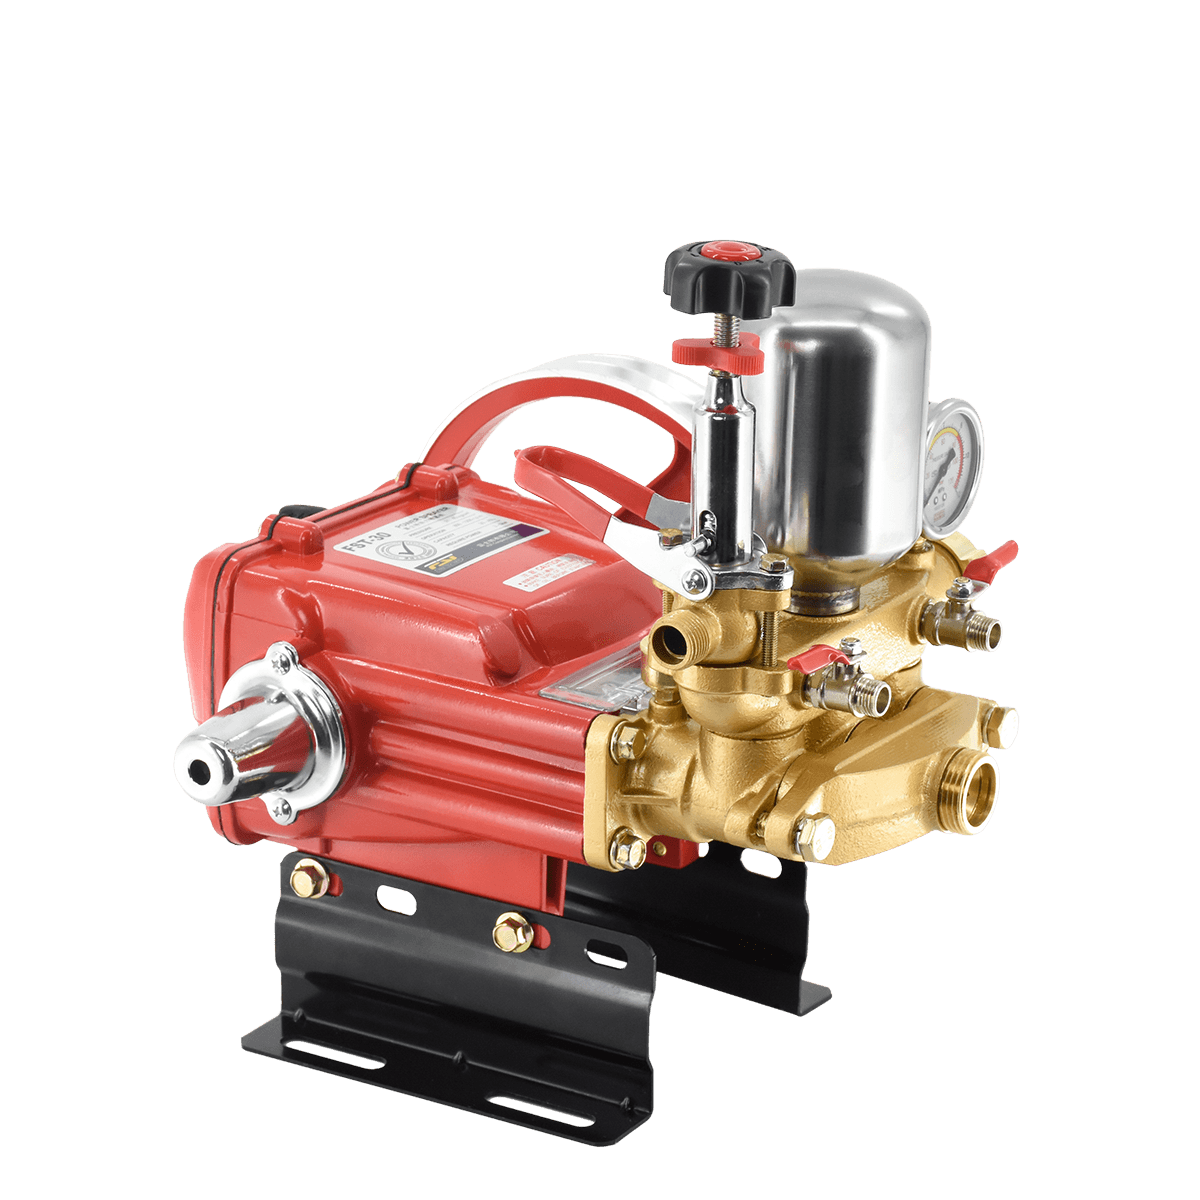 FST-30EI Power Sprayer Pump